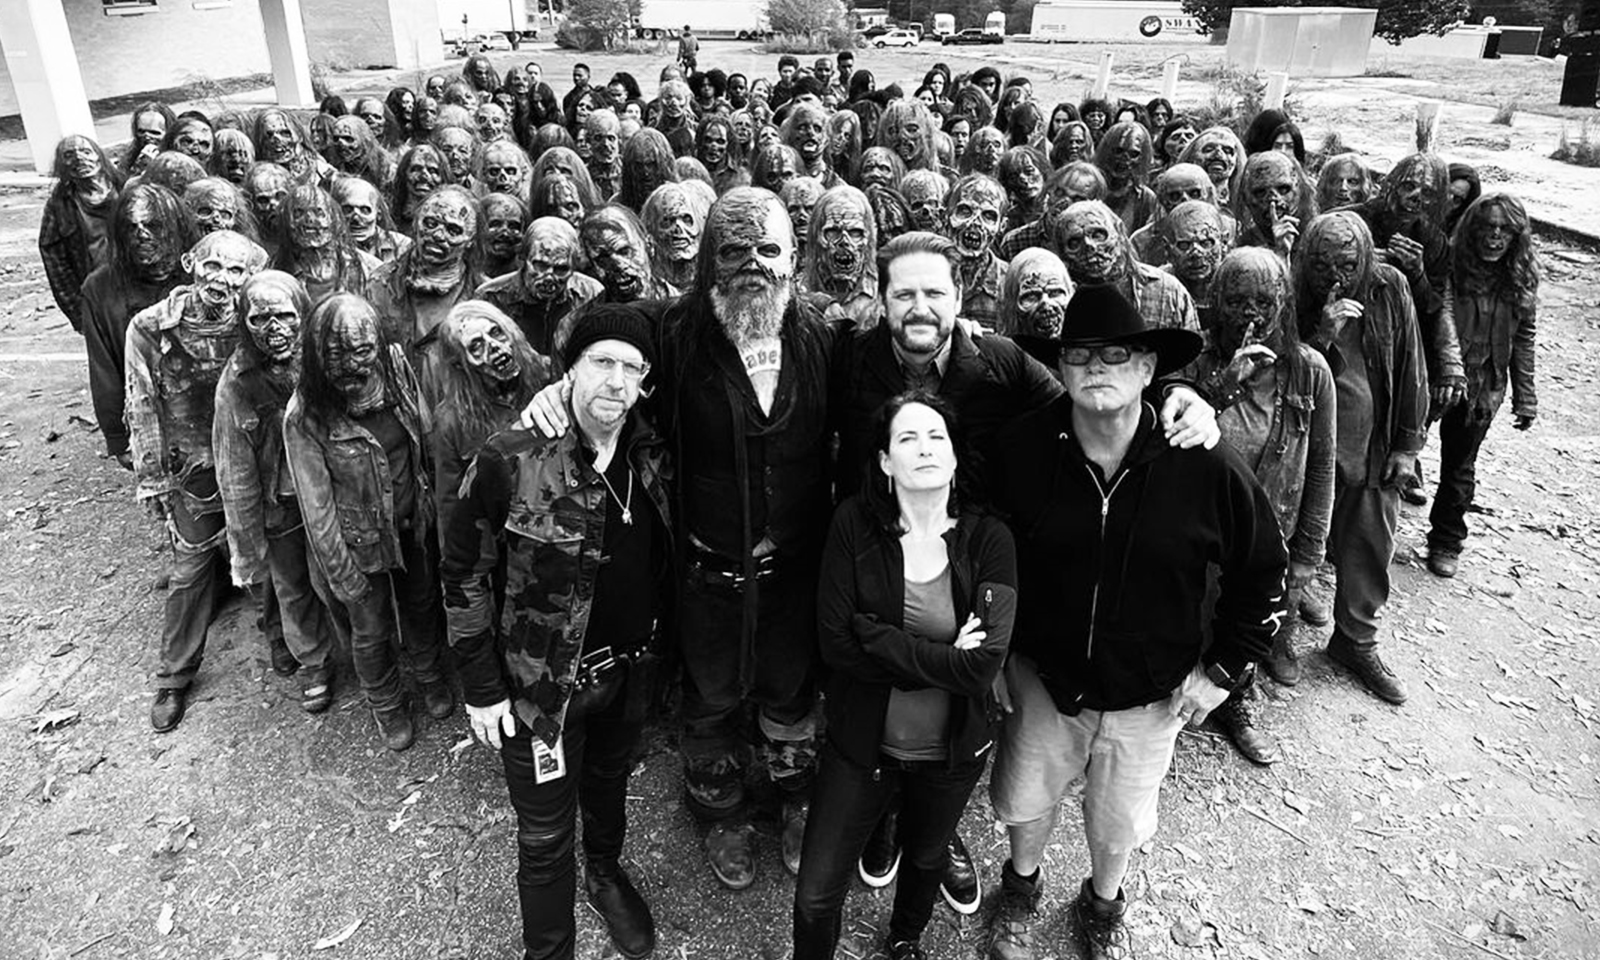 Duane Charles Manwiller ao lado do ator que interpretou Beta e vários zumbis e sussurradores nos bastidores de The Walking Dead